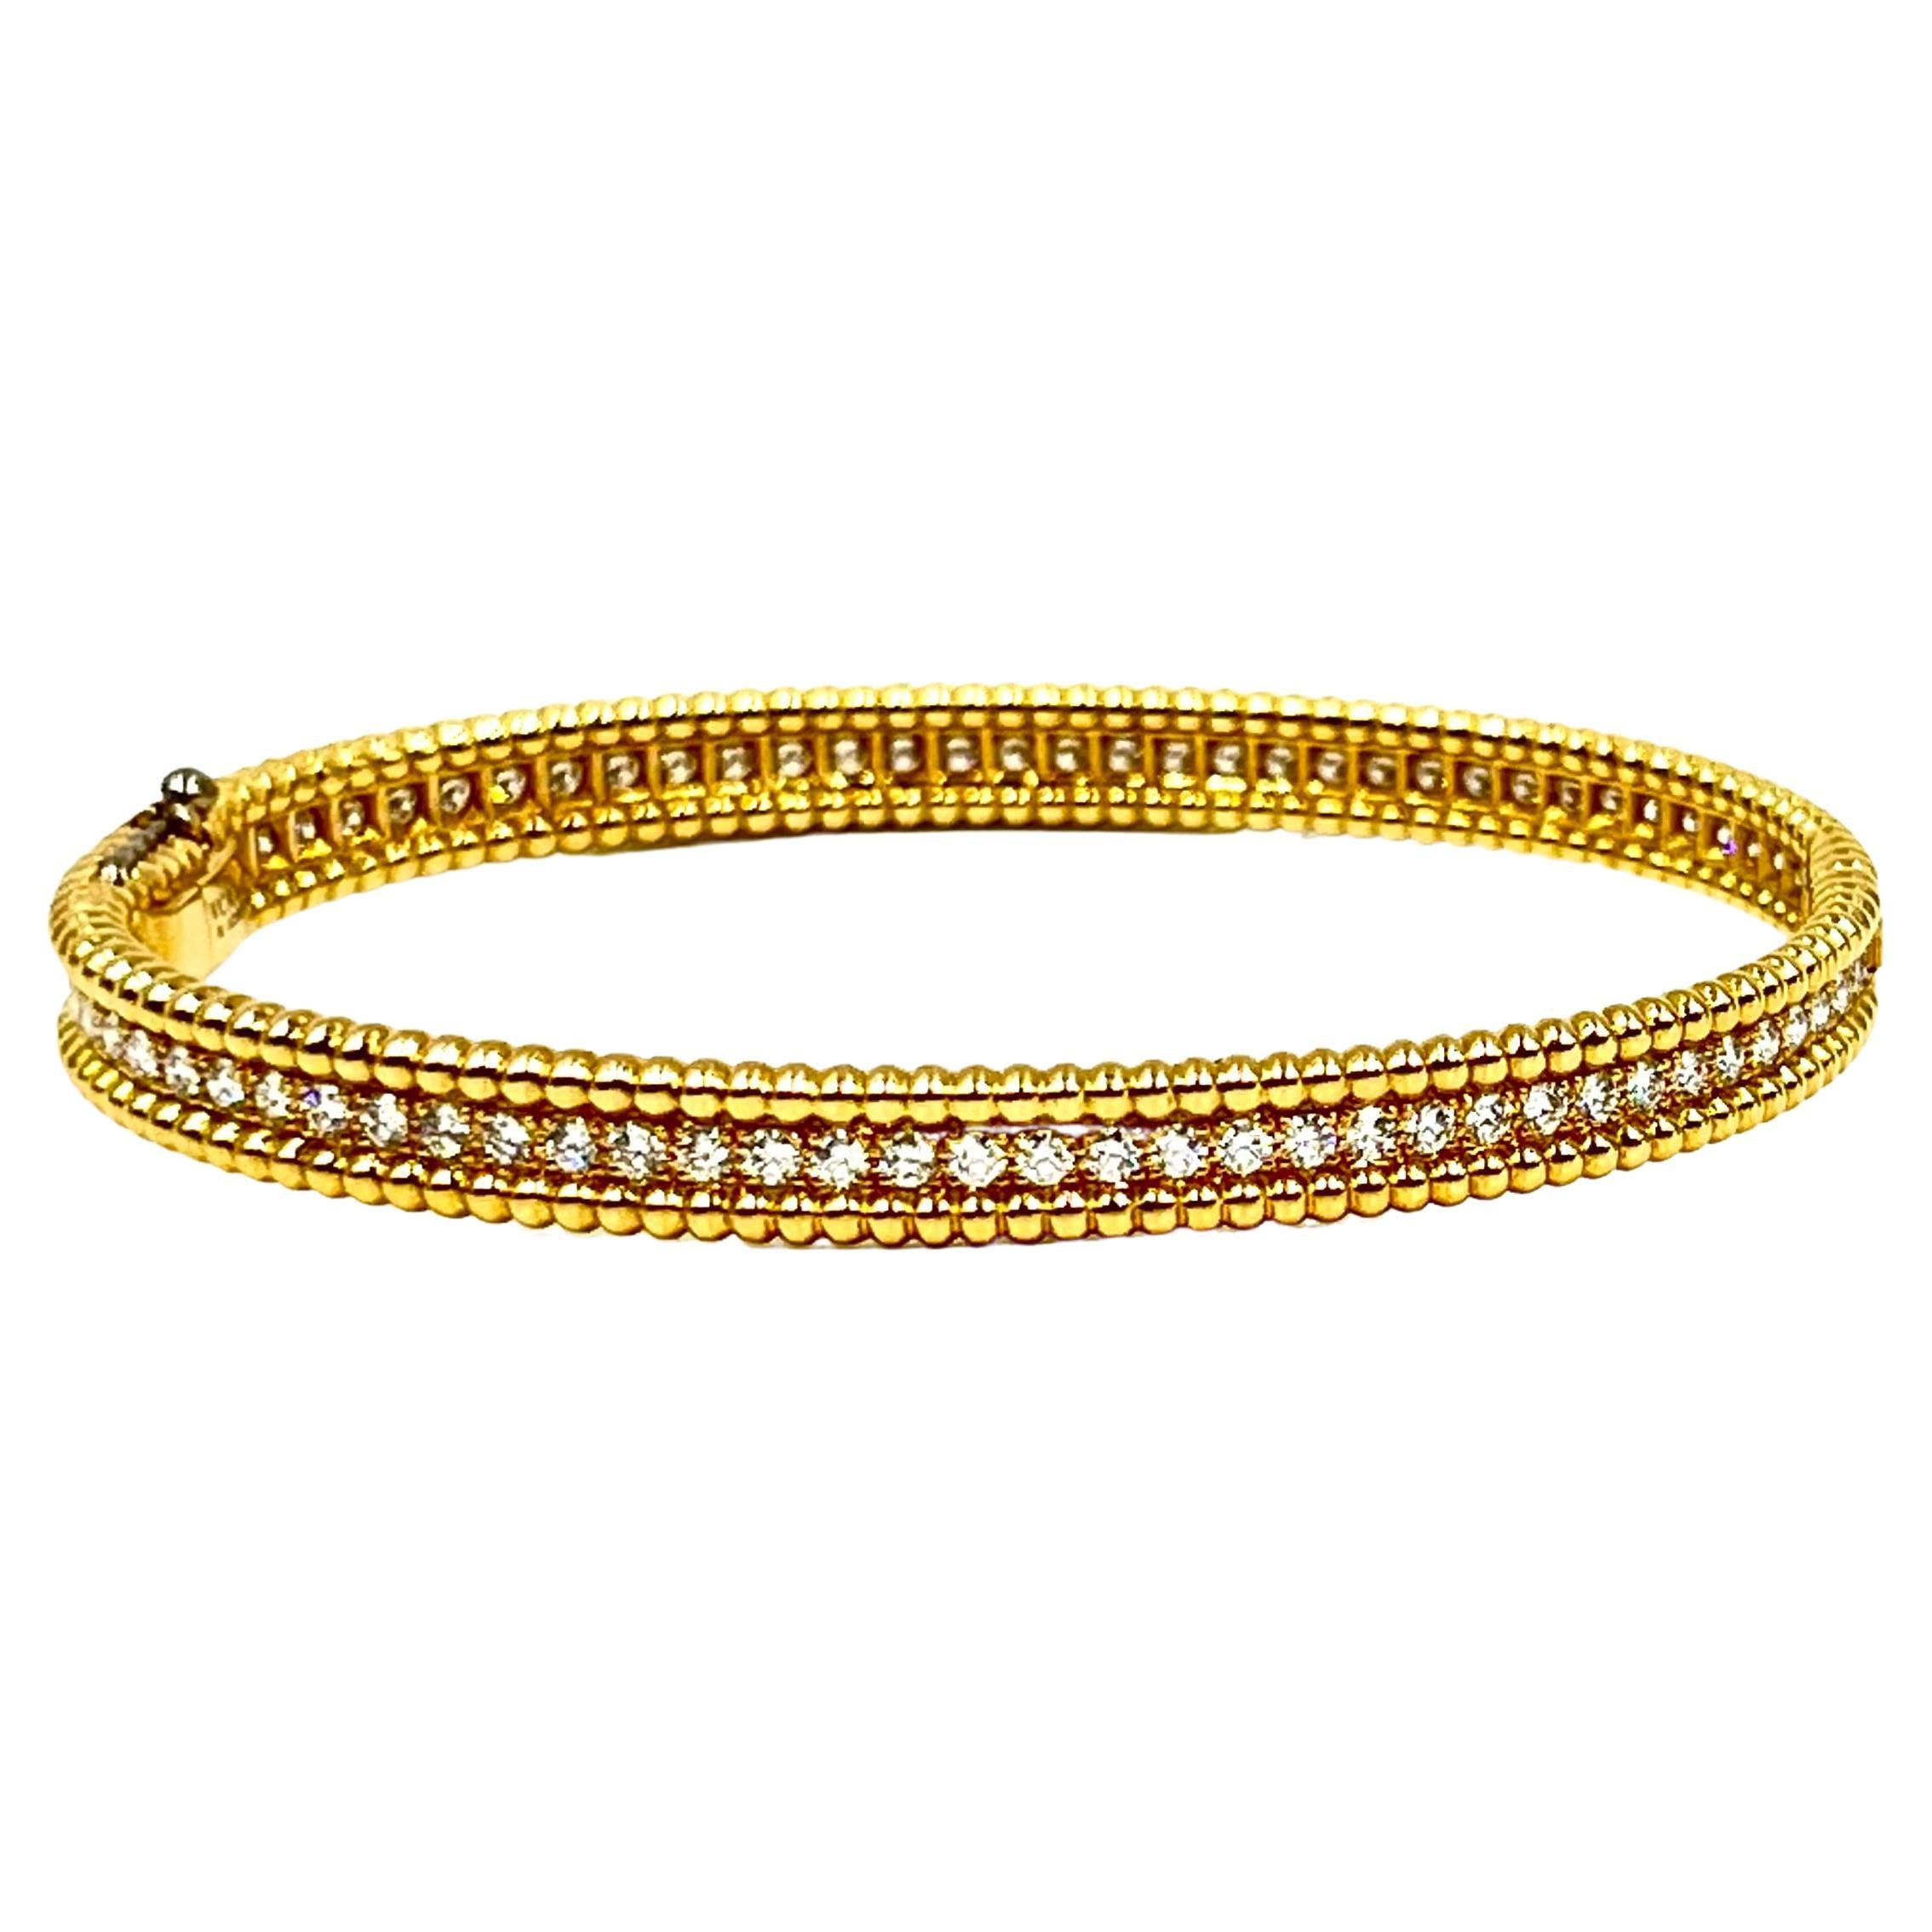 Van Cleef & Arpels Perlée Yellow Gold Diamond Bracelet, Size Small